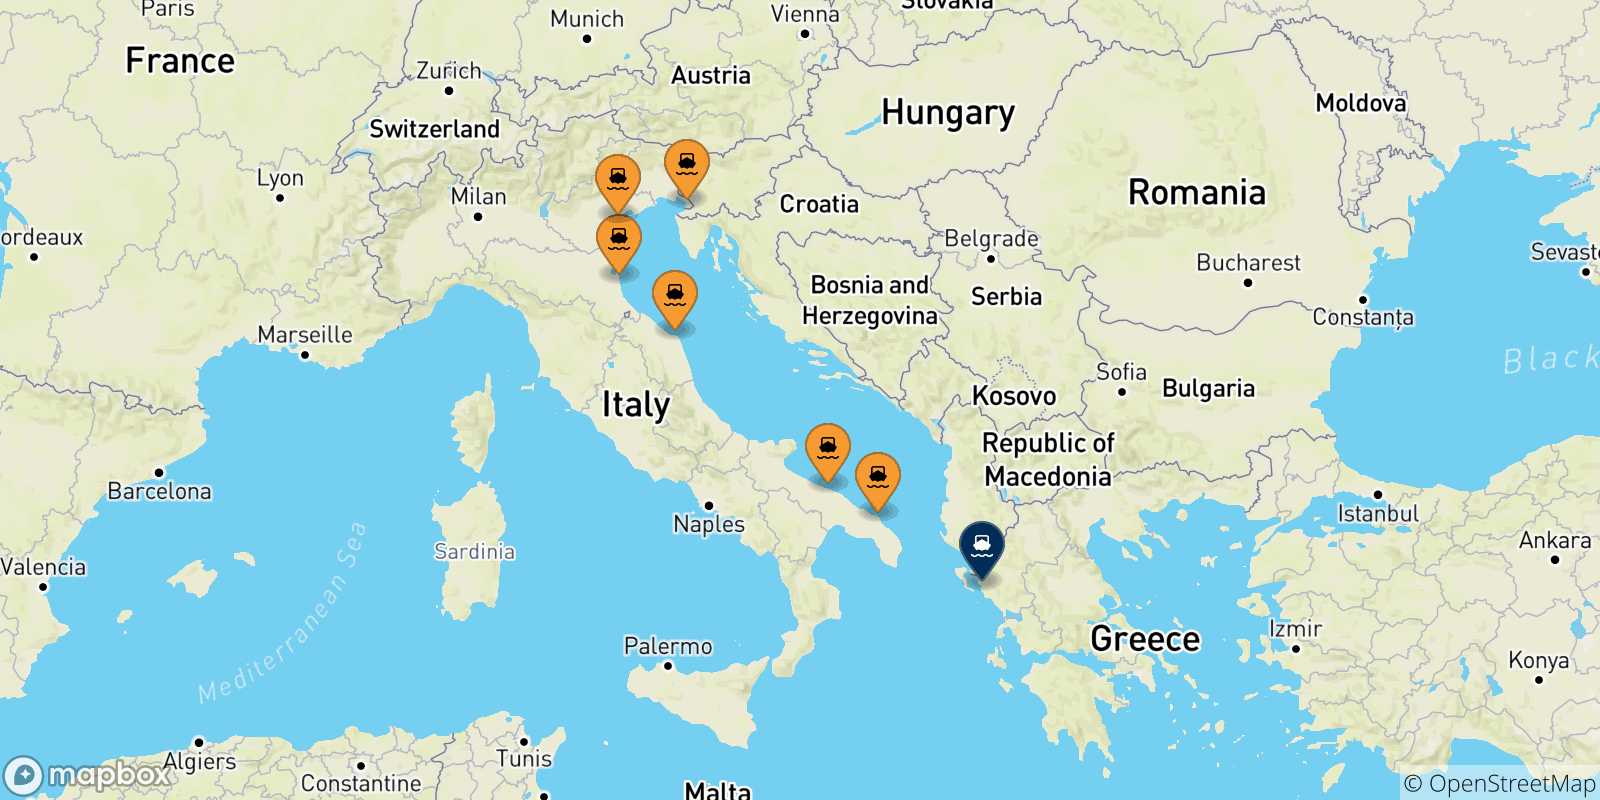 Mappa delle possibili rotte tra l'Italia e Igoumenitsa